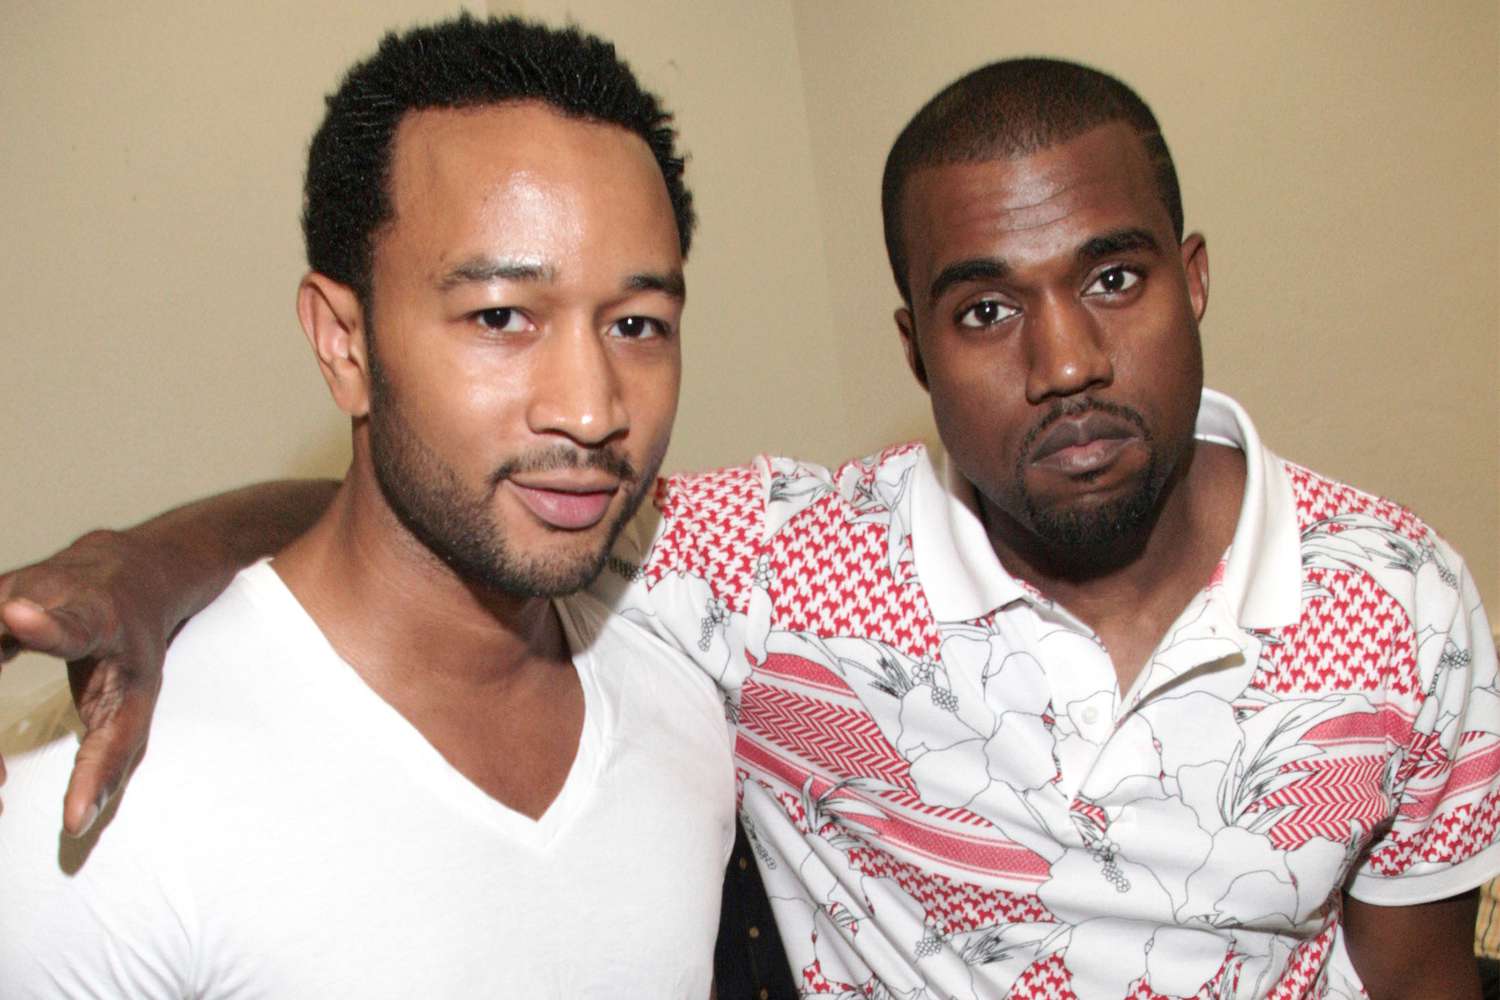 John Legend and Kanye West